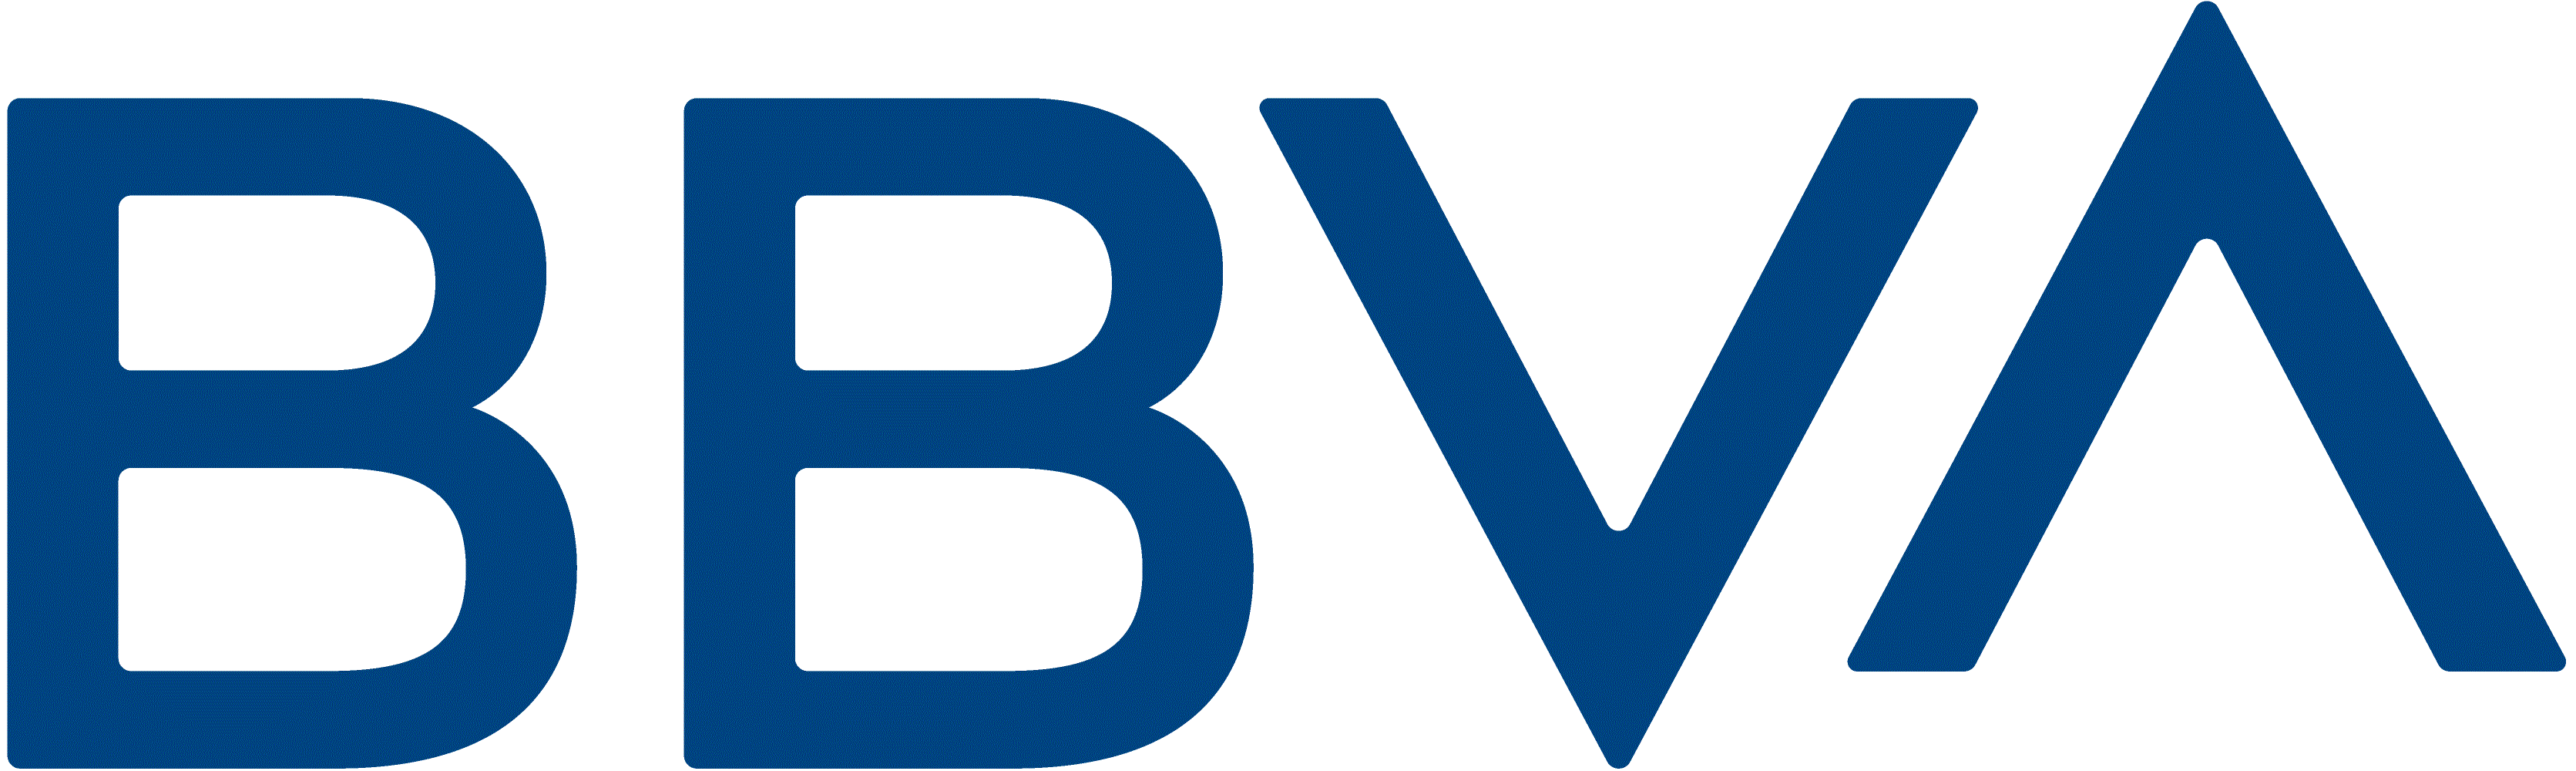 bbva-20210630_g1.gif